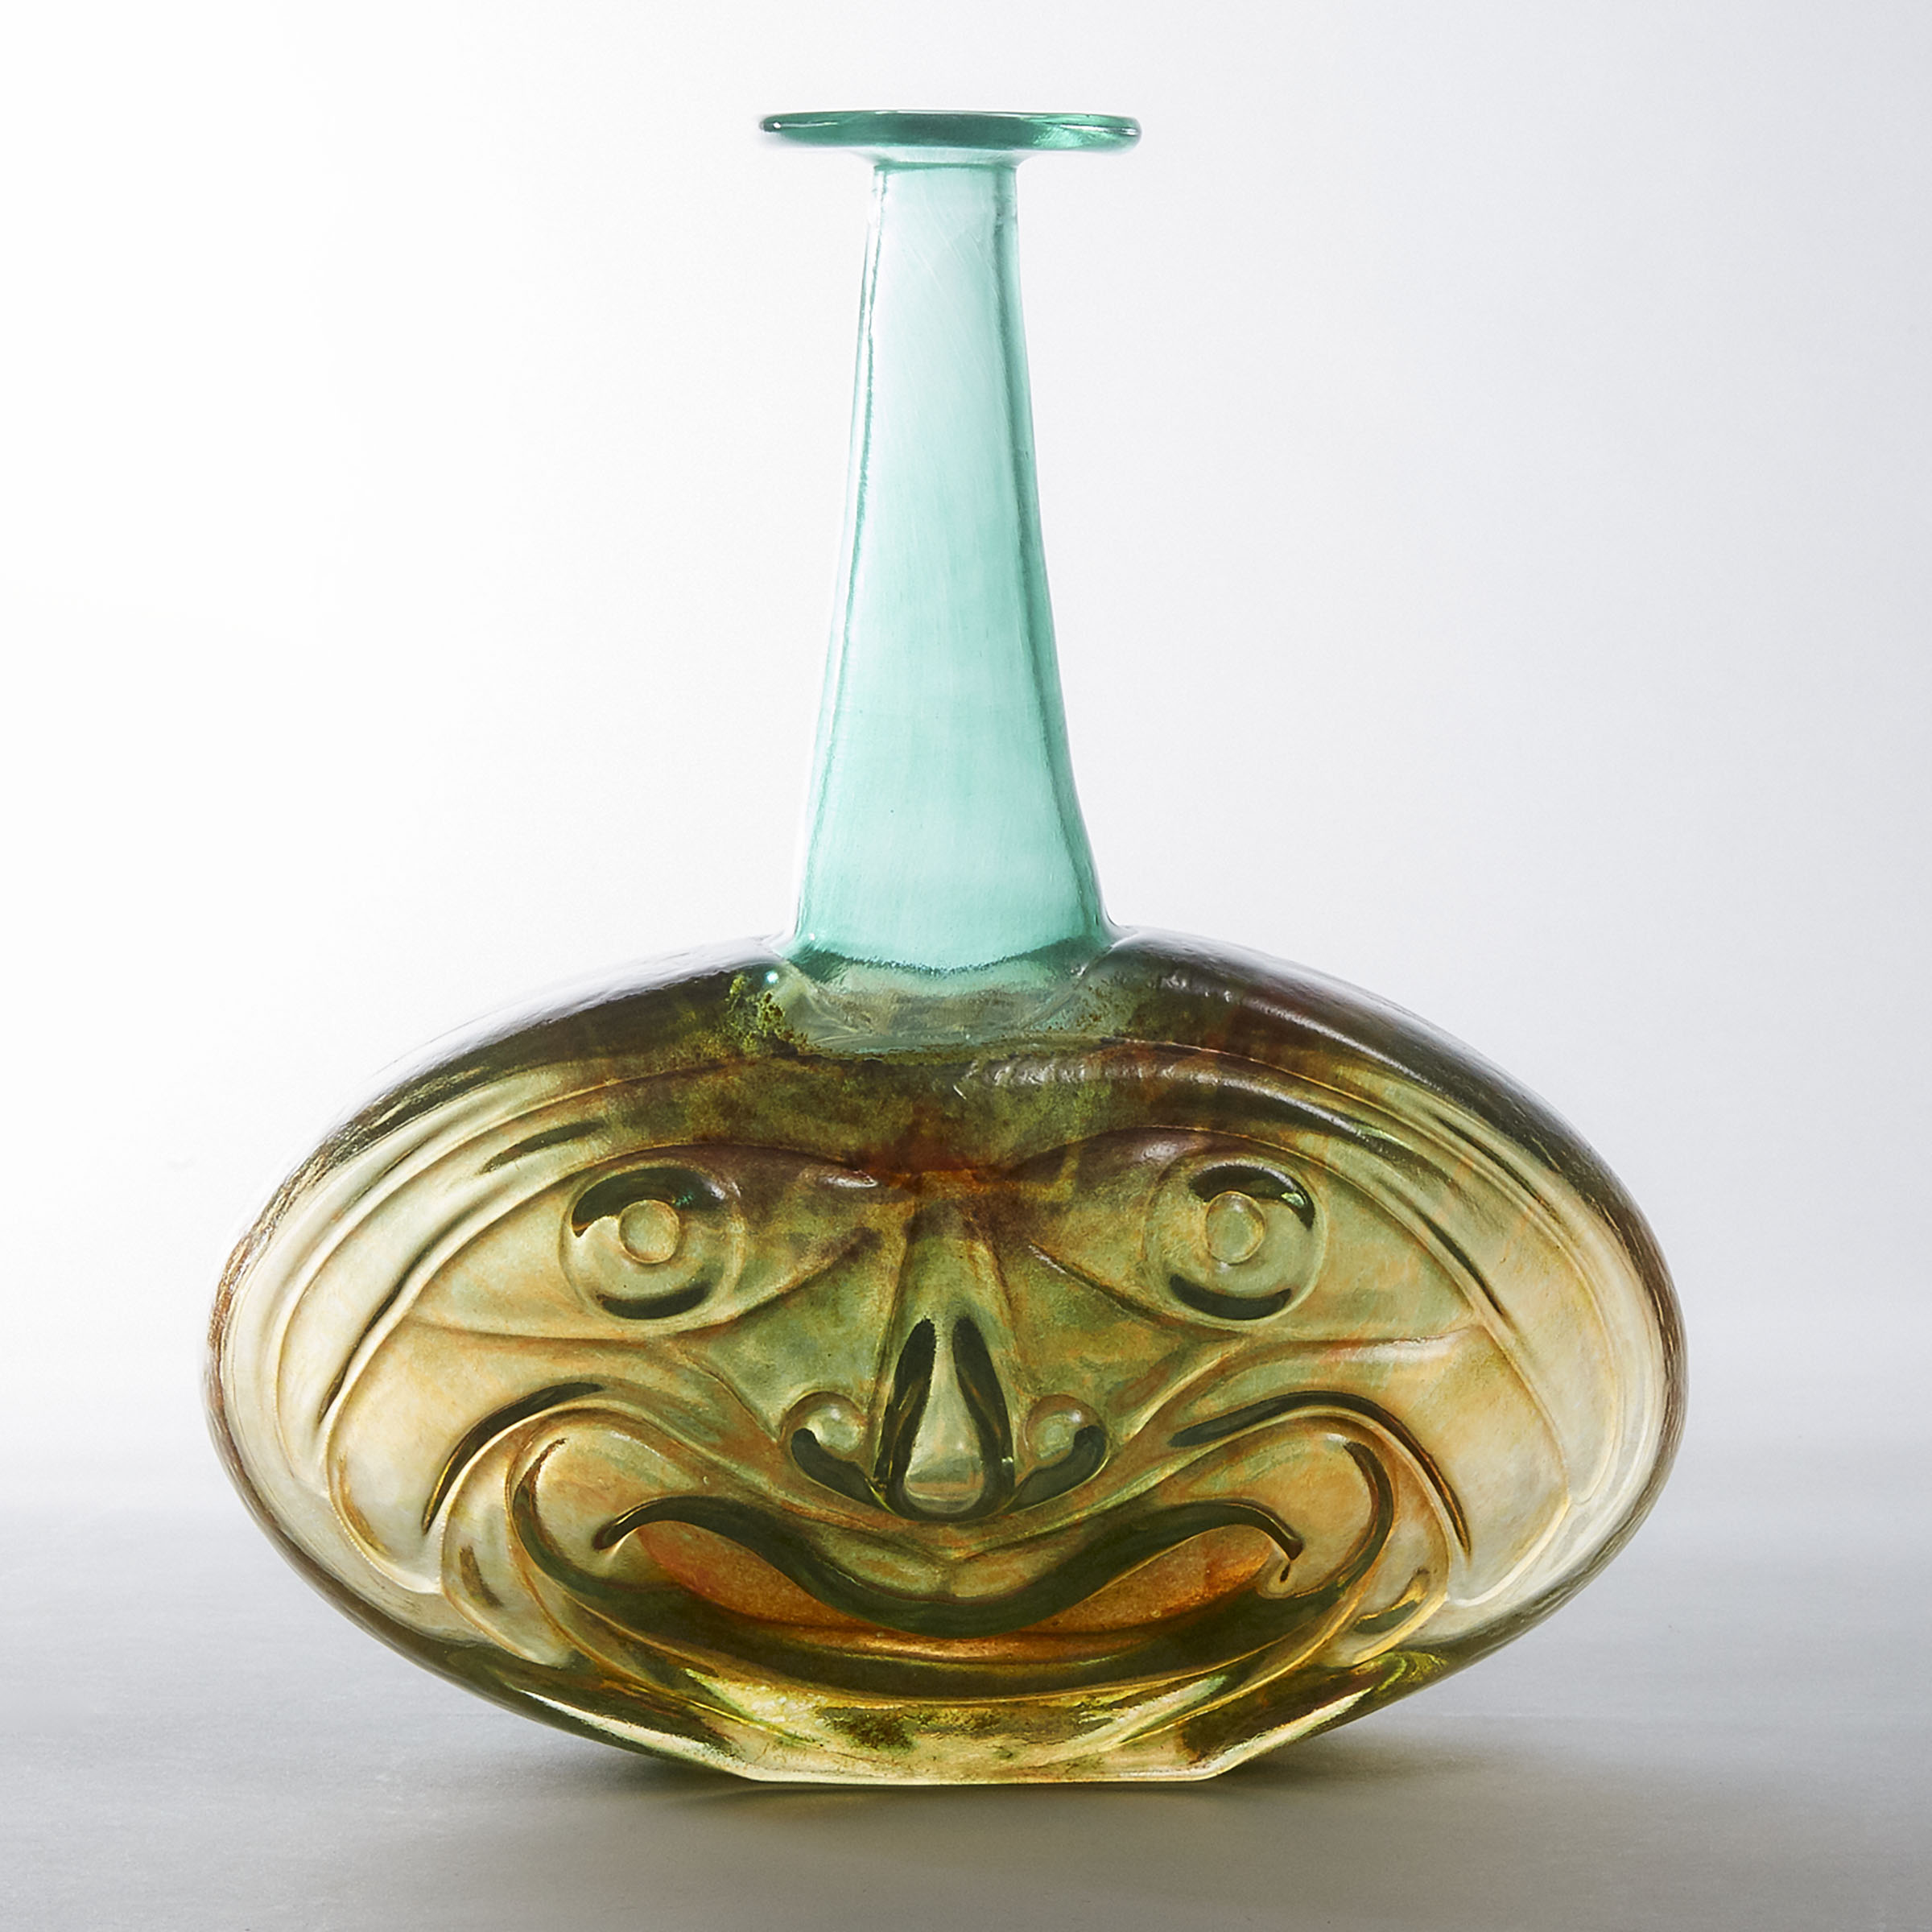 Kosta Boda 'Rio' Coloured Glass Face Vase, Kjell Engman, 1980s